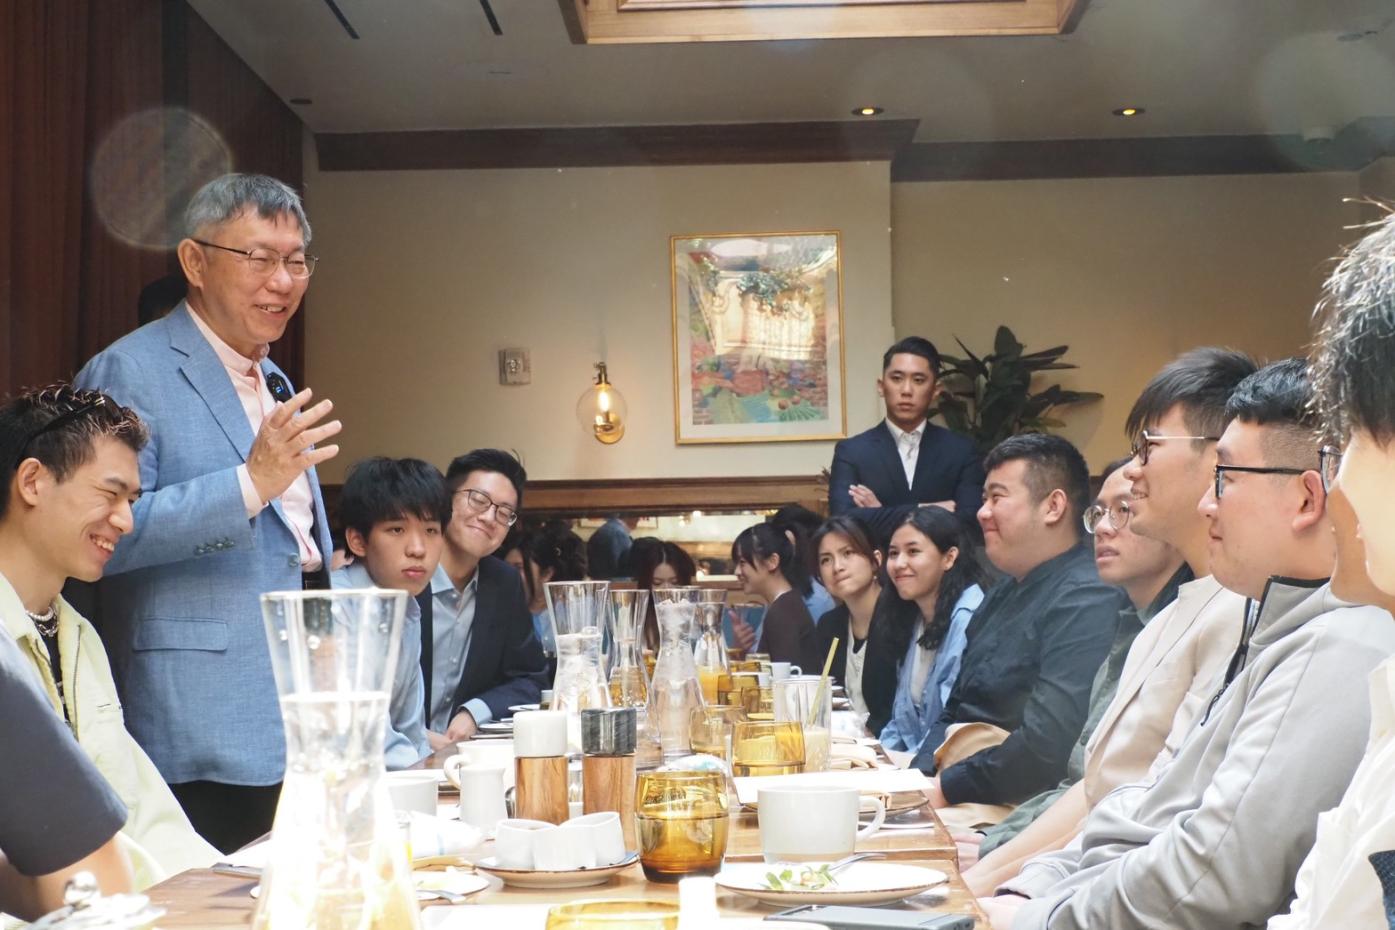 台灣民眾黨主席柯文哲(著藍色西裝者)在紐約和學生座談。台灣民眾黨提供